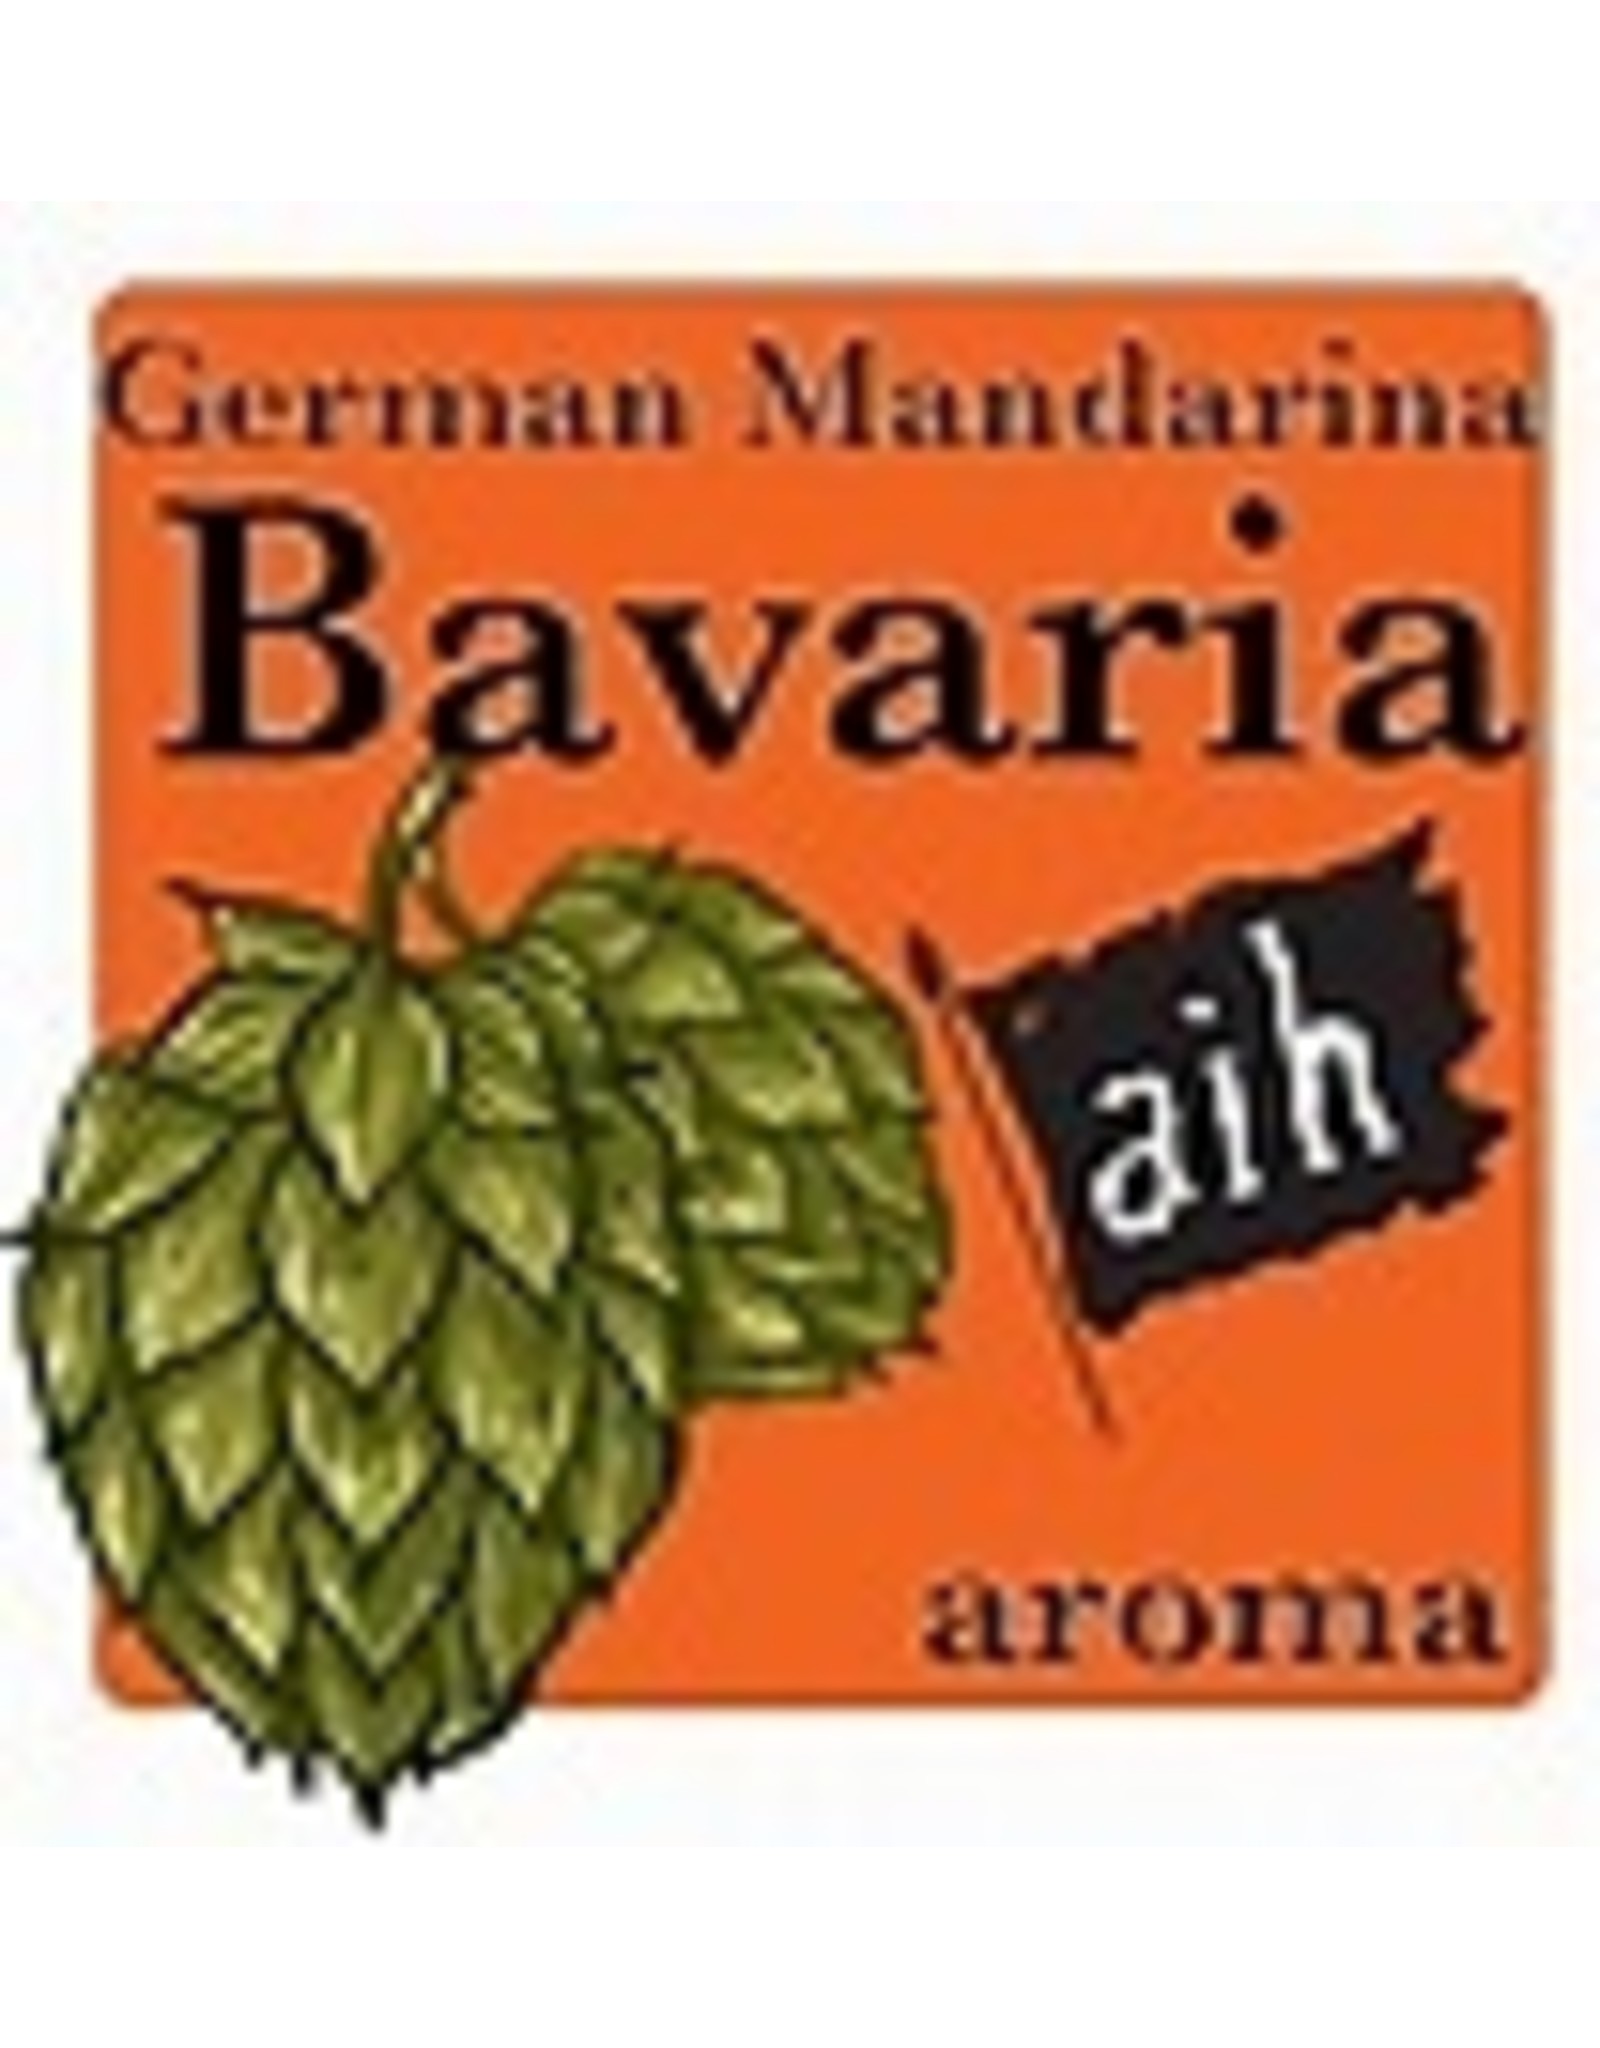 Mandarina Bavaria hop pellets